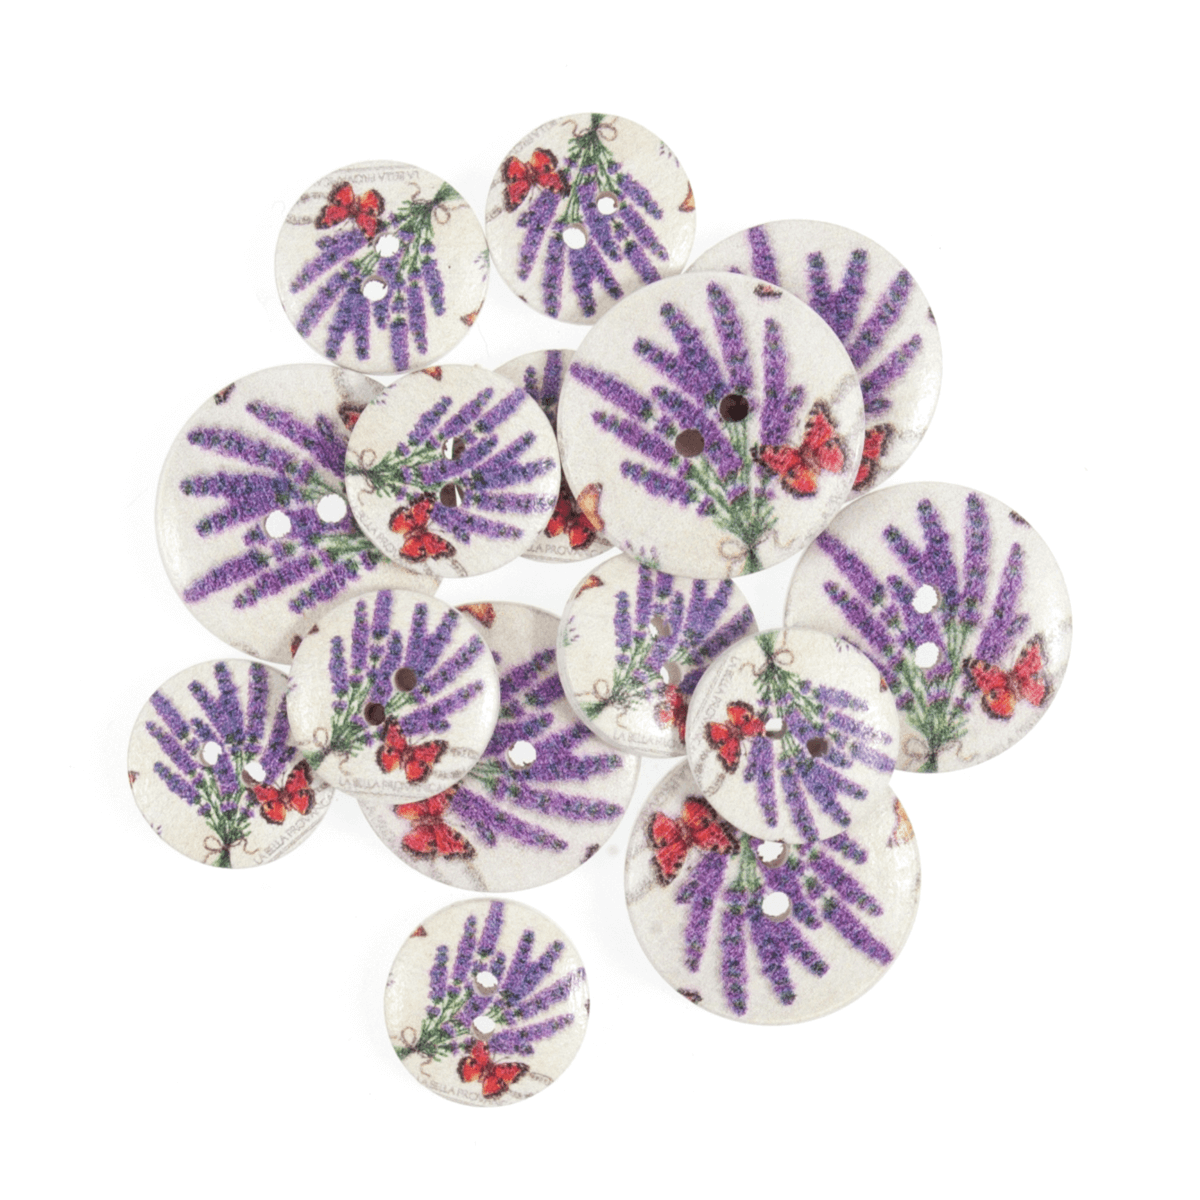 15 x Assorted Garden Butterfly Wooden Craft Buttons 18mm - 25mm 